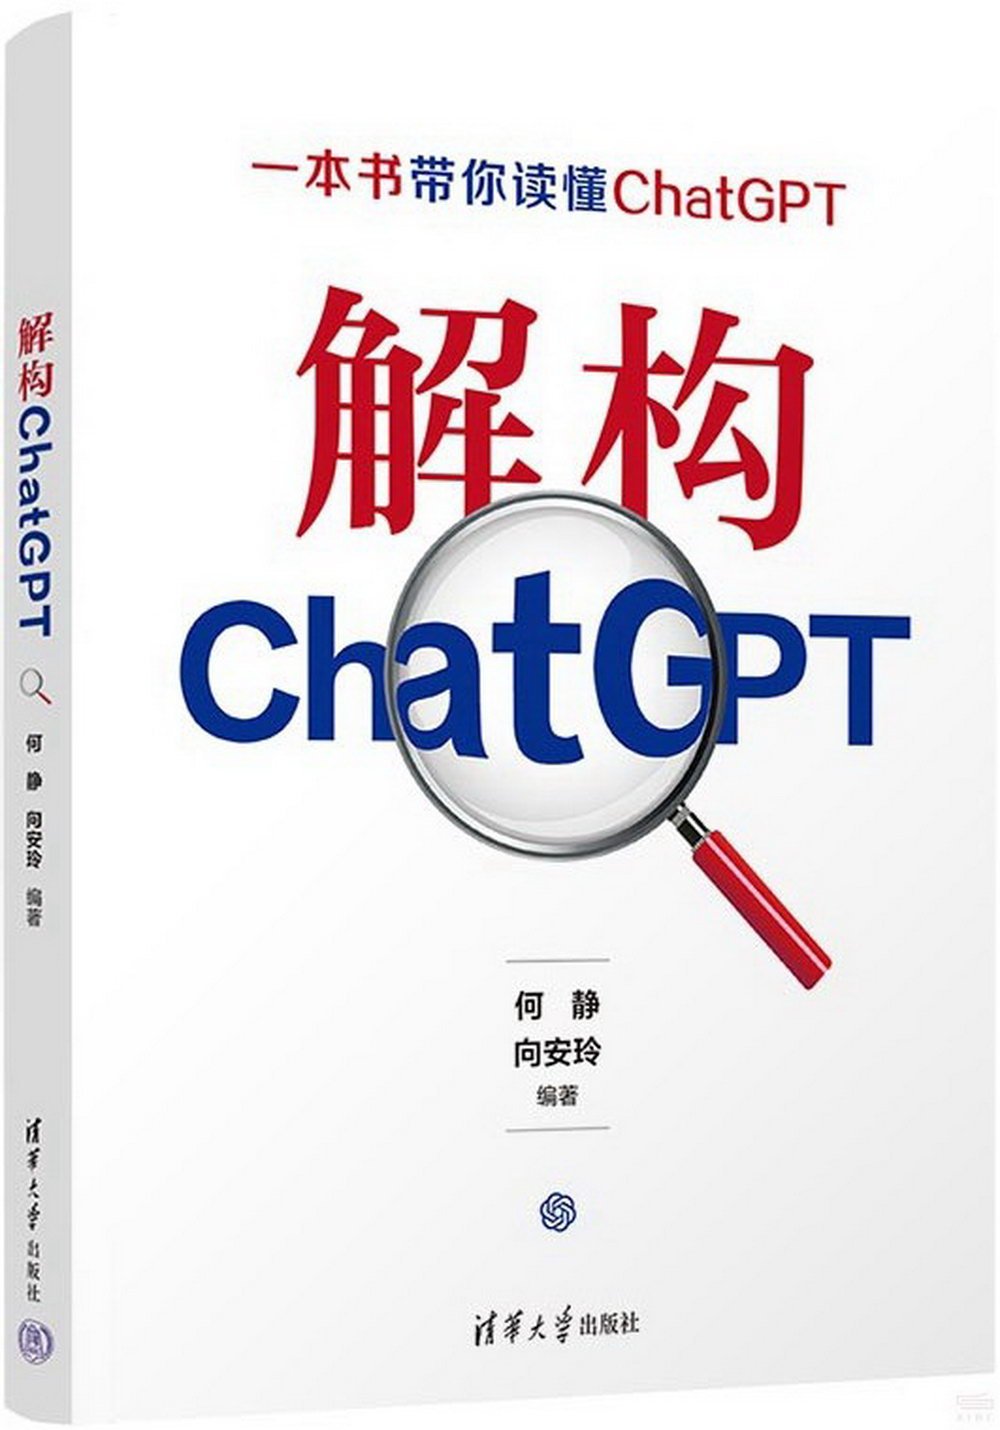 解構ChatGPT